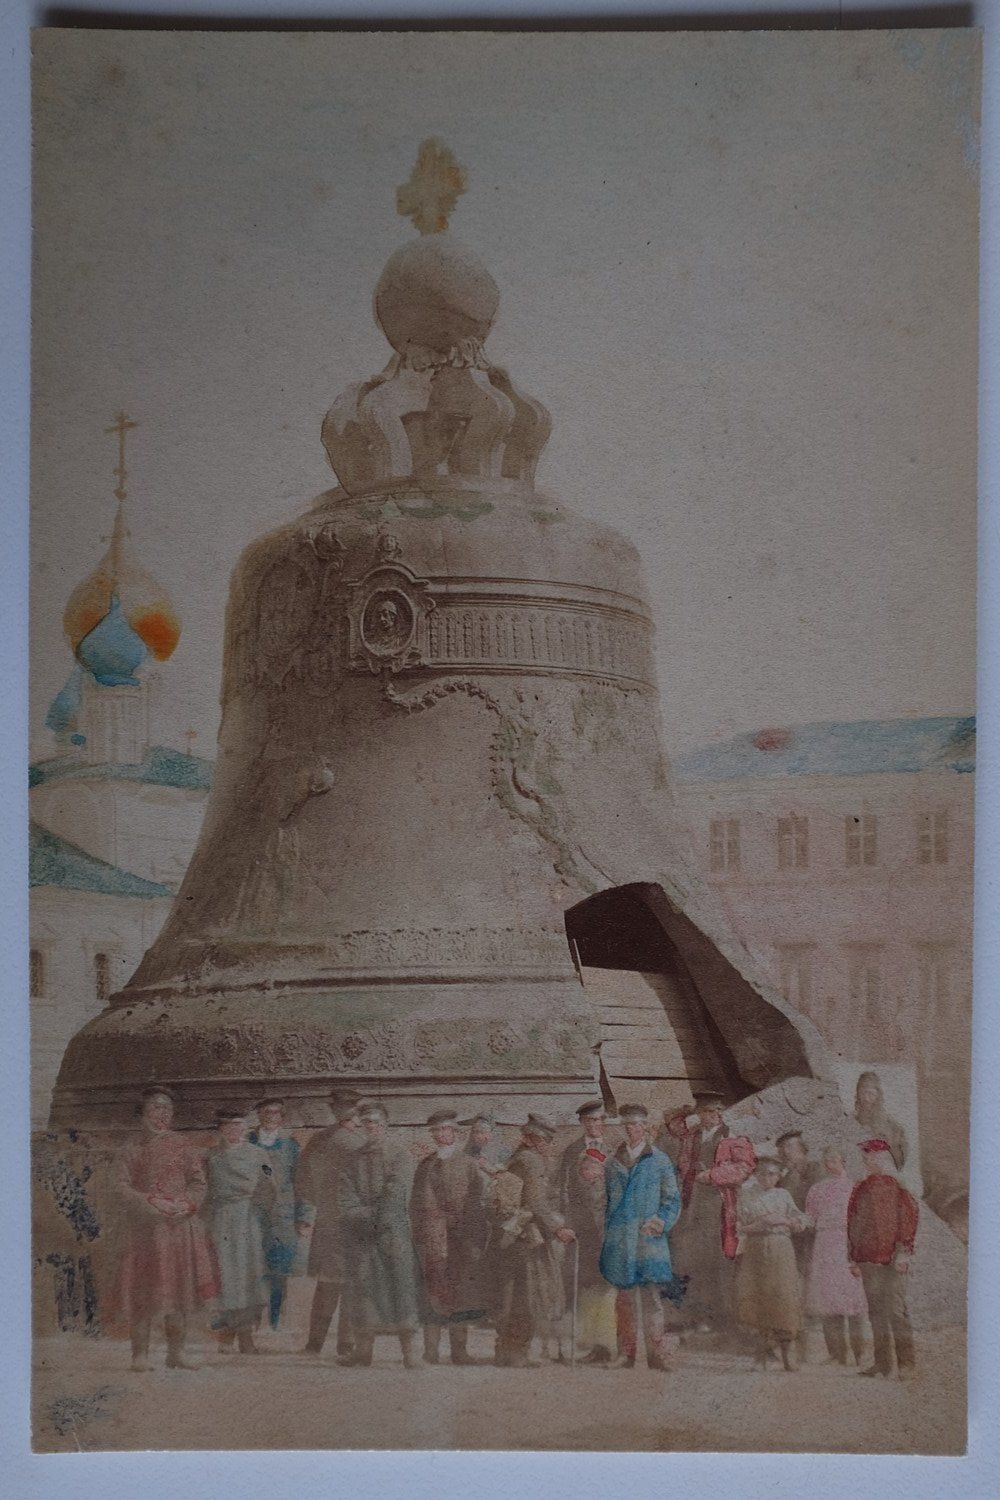 E. Гилбертсон. Царь-колокол. 1838 Г.